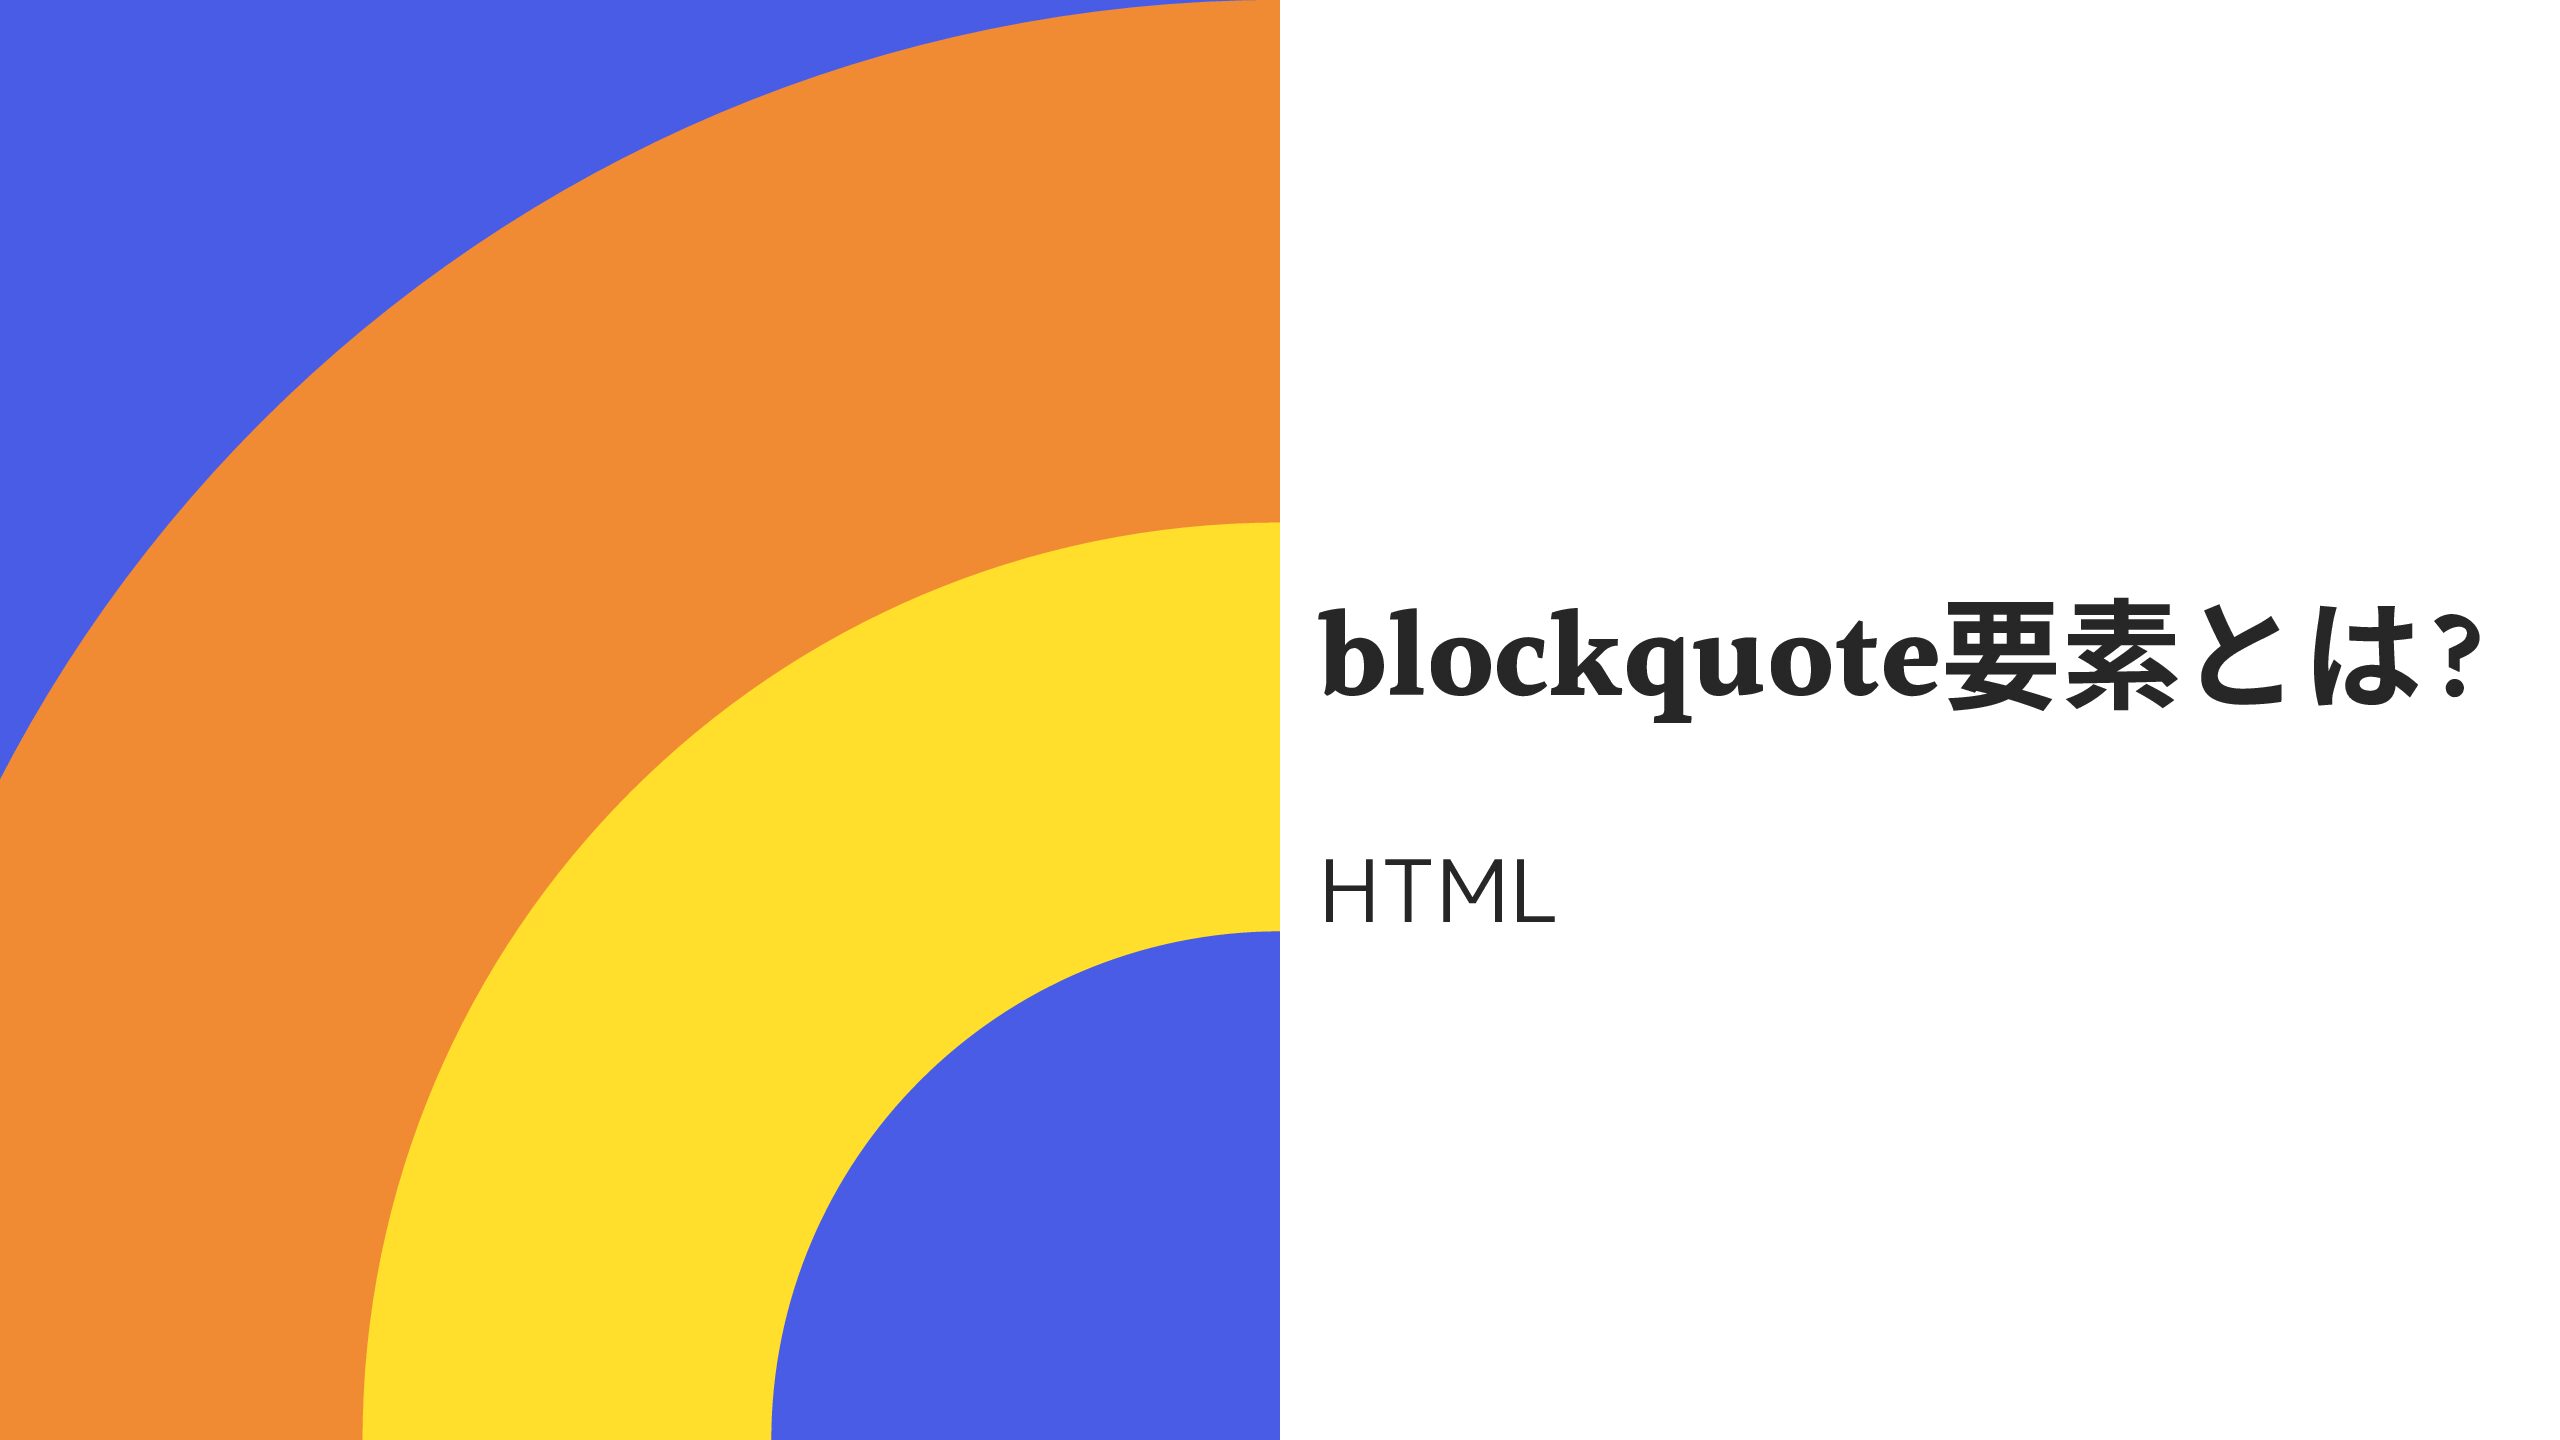 htmlの引用タグ「blockquote要素」とは? 読み方も分かりやすく解説!